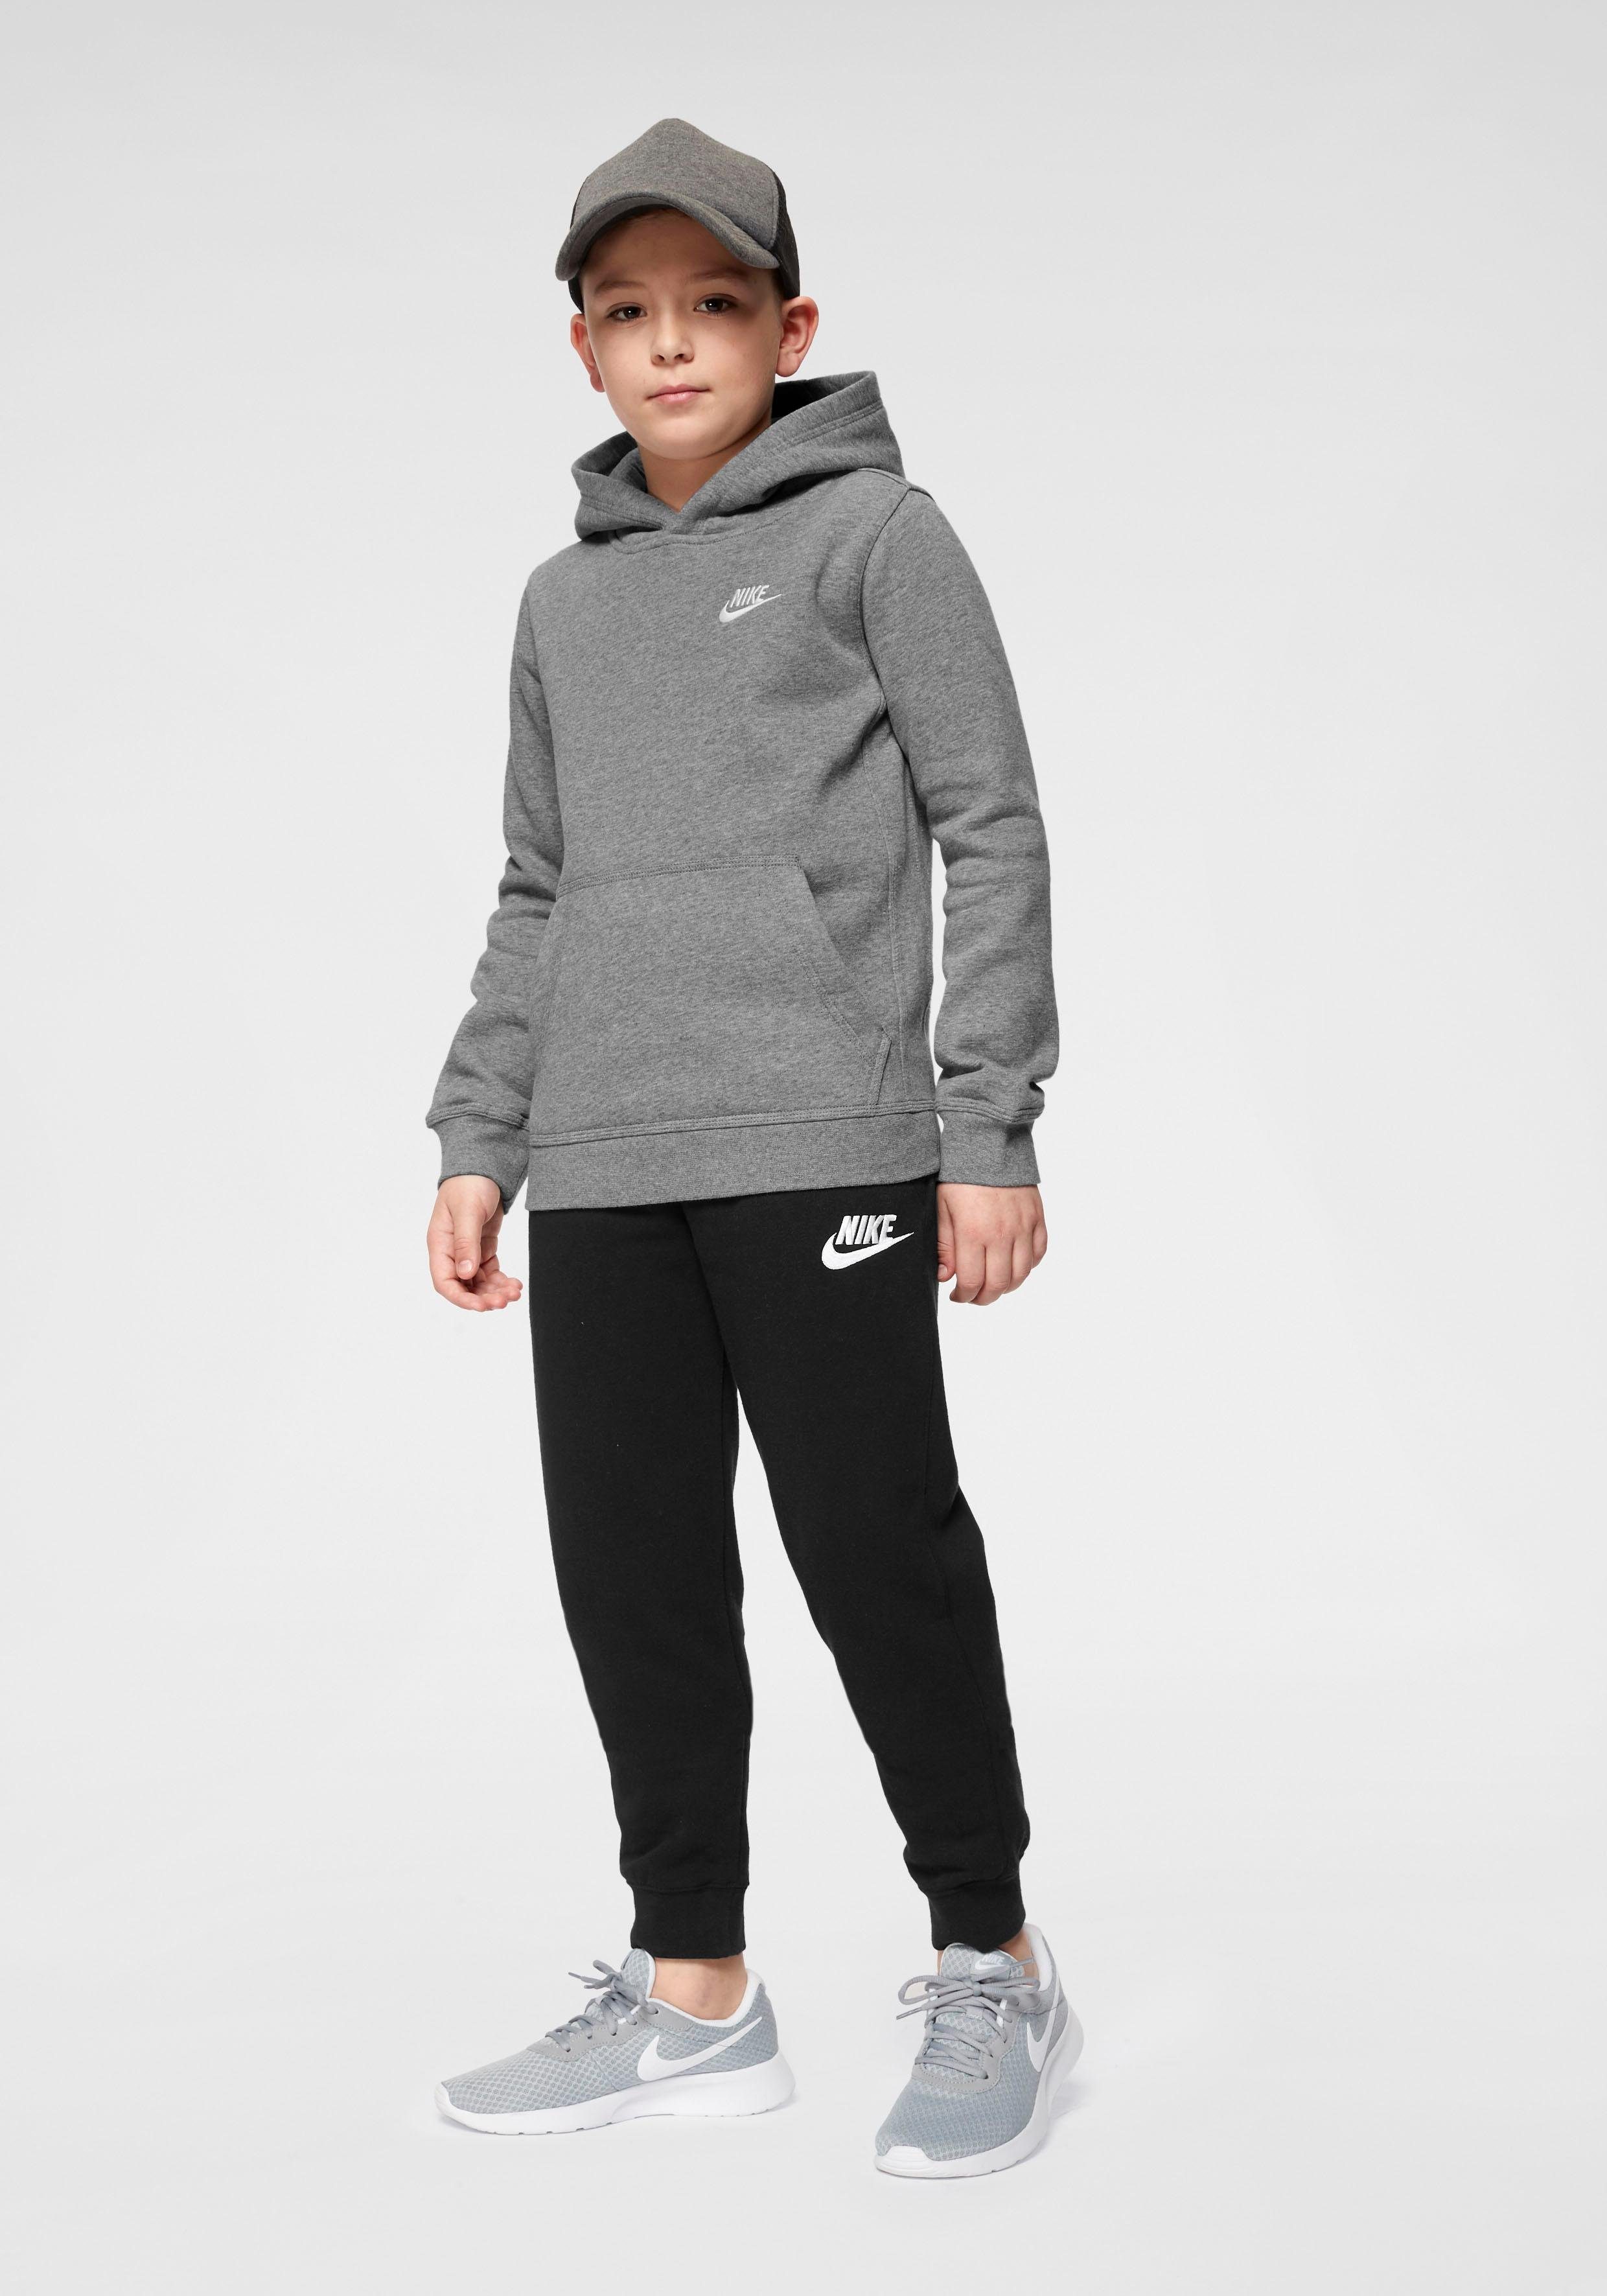 Sportswear Hoodie grau-meliert Nike Kids' Pullover Kapuzensweatshirt Club Big